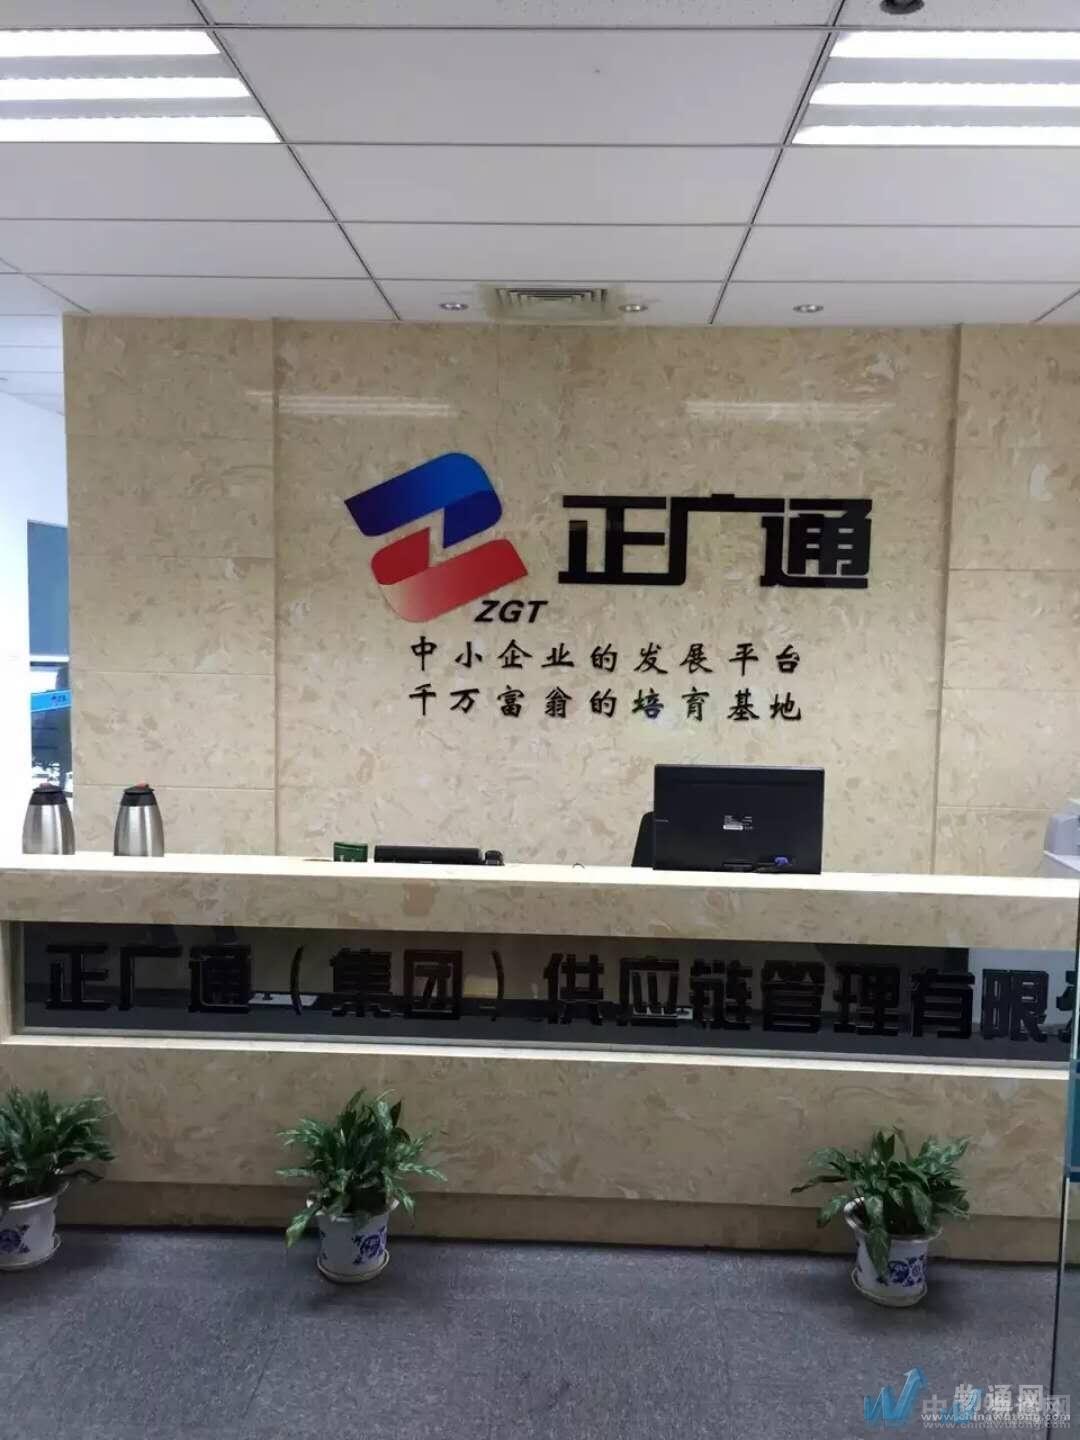 杭州正广通供应链管理有限公司成都业务部门头照